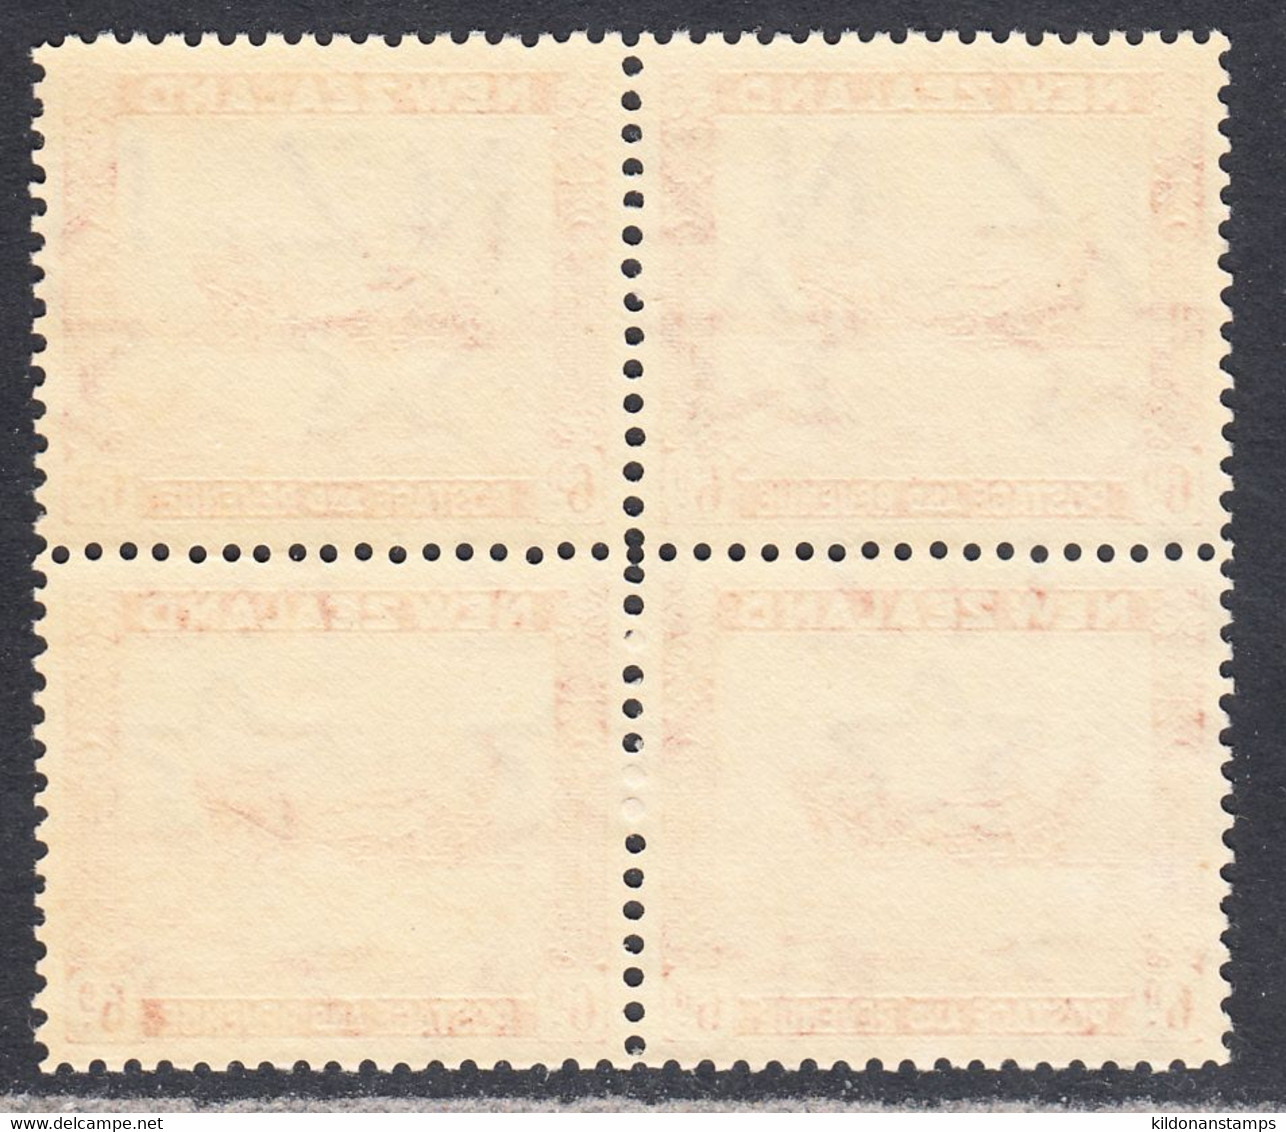 New Zealand 1936-42 Mint No Hinge, Perf 12.5, Block, Sc# ,SG 585b - Nuevos